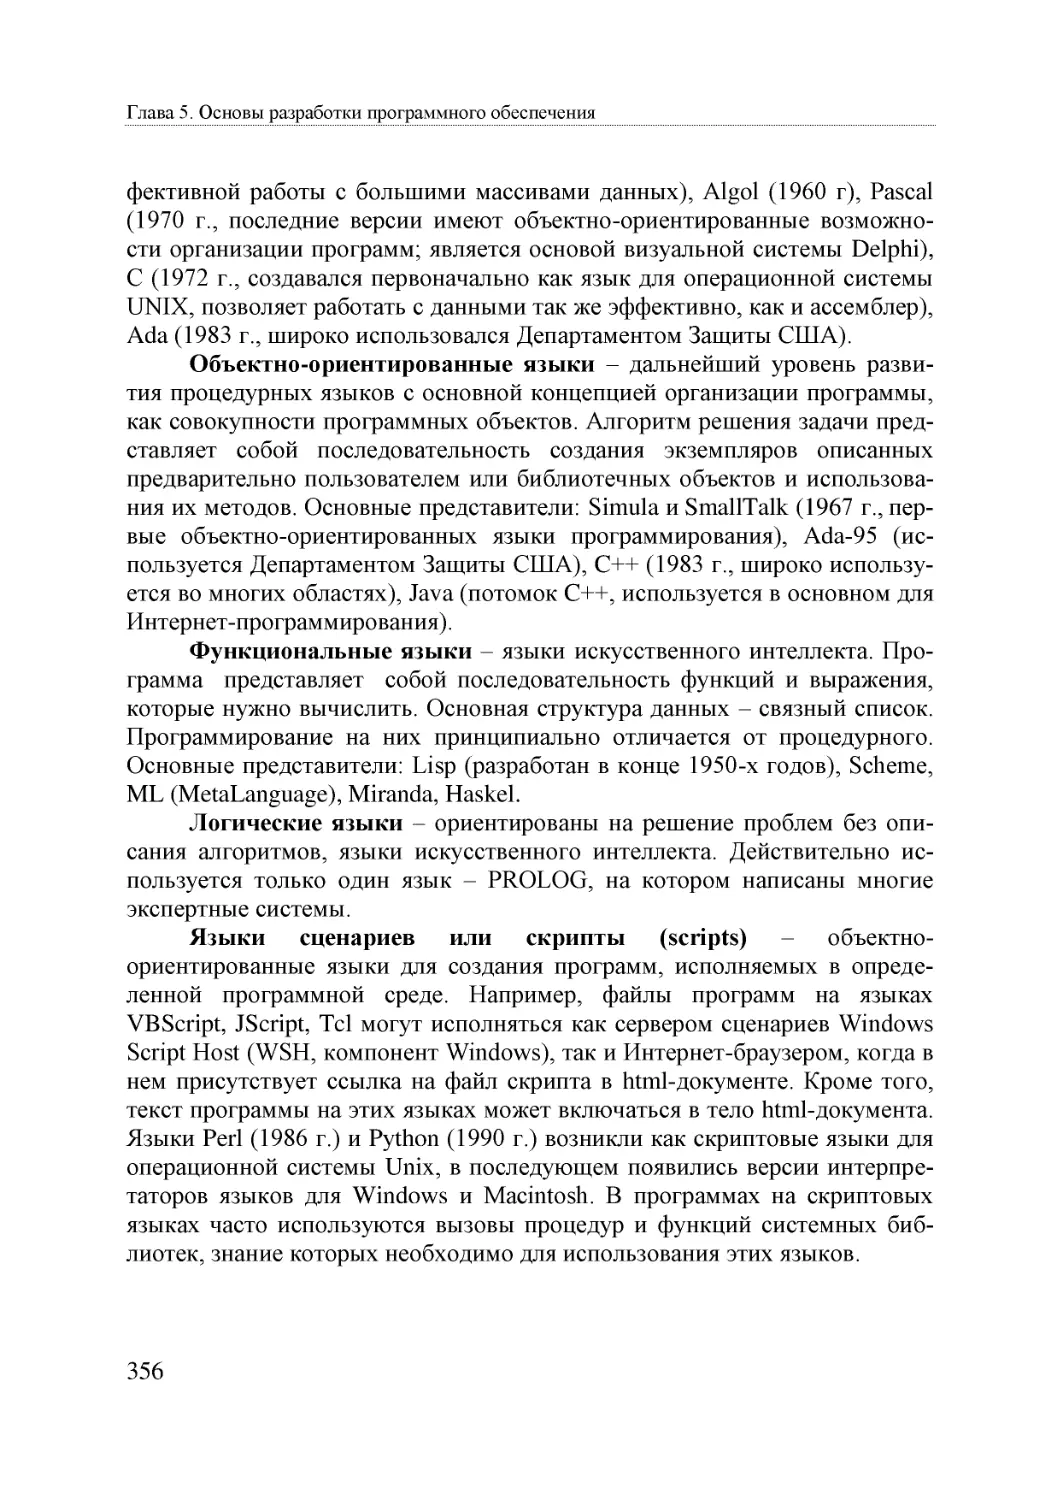 Informatika_Uchebnik_dlya_vuzov_2010 356